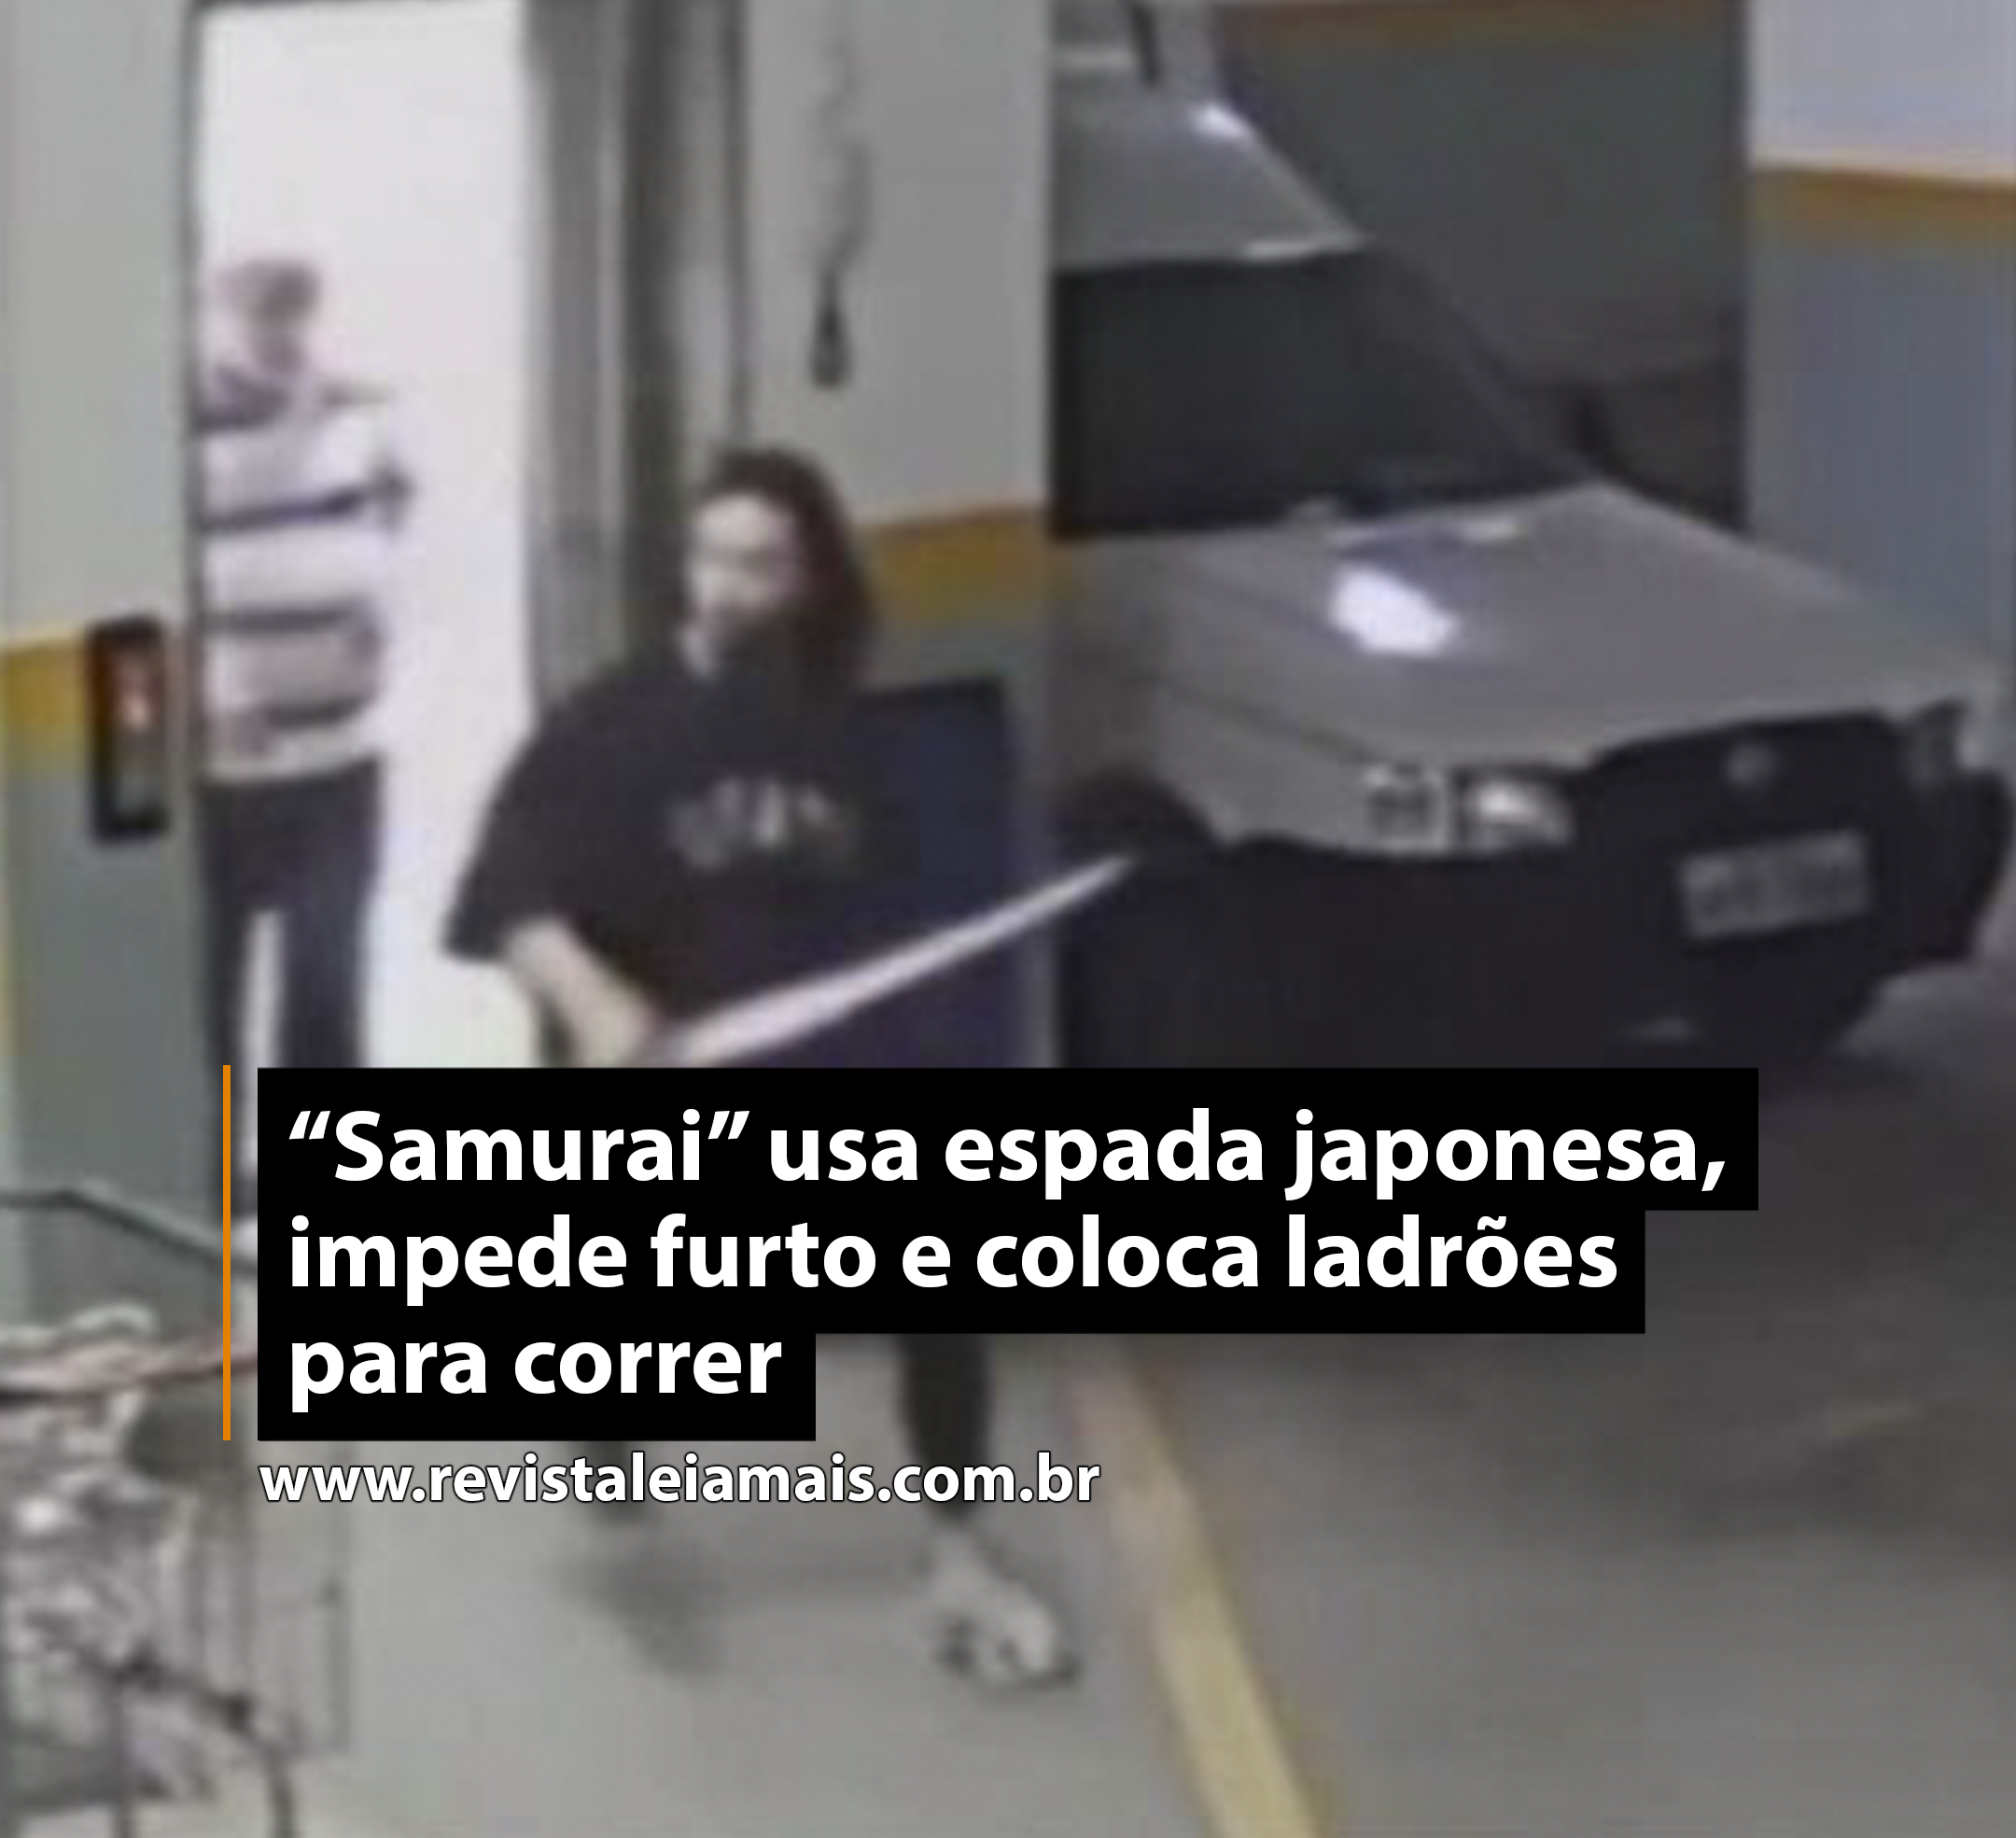 “Samurai” usa espada japonesa, impede furto e coloca ladrões para correr